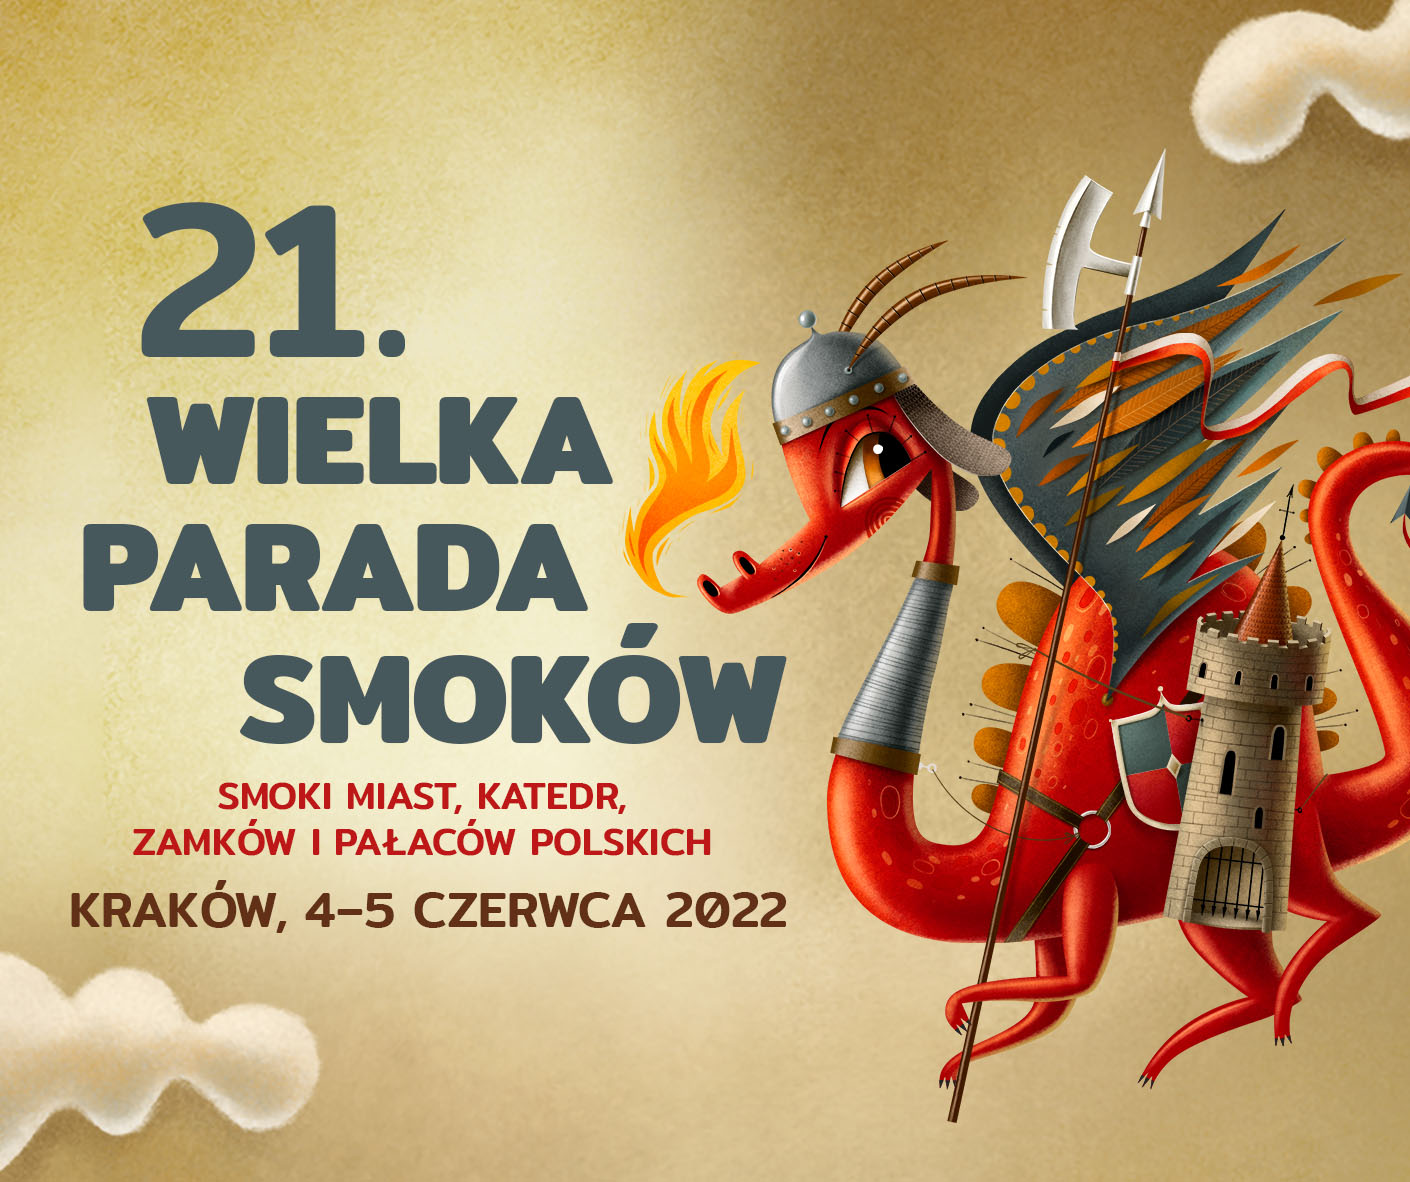 21 Wielka Parada Smoków - Smoki miast, katedr, zamków i pałaców polskich